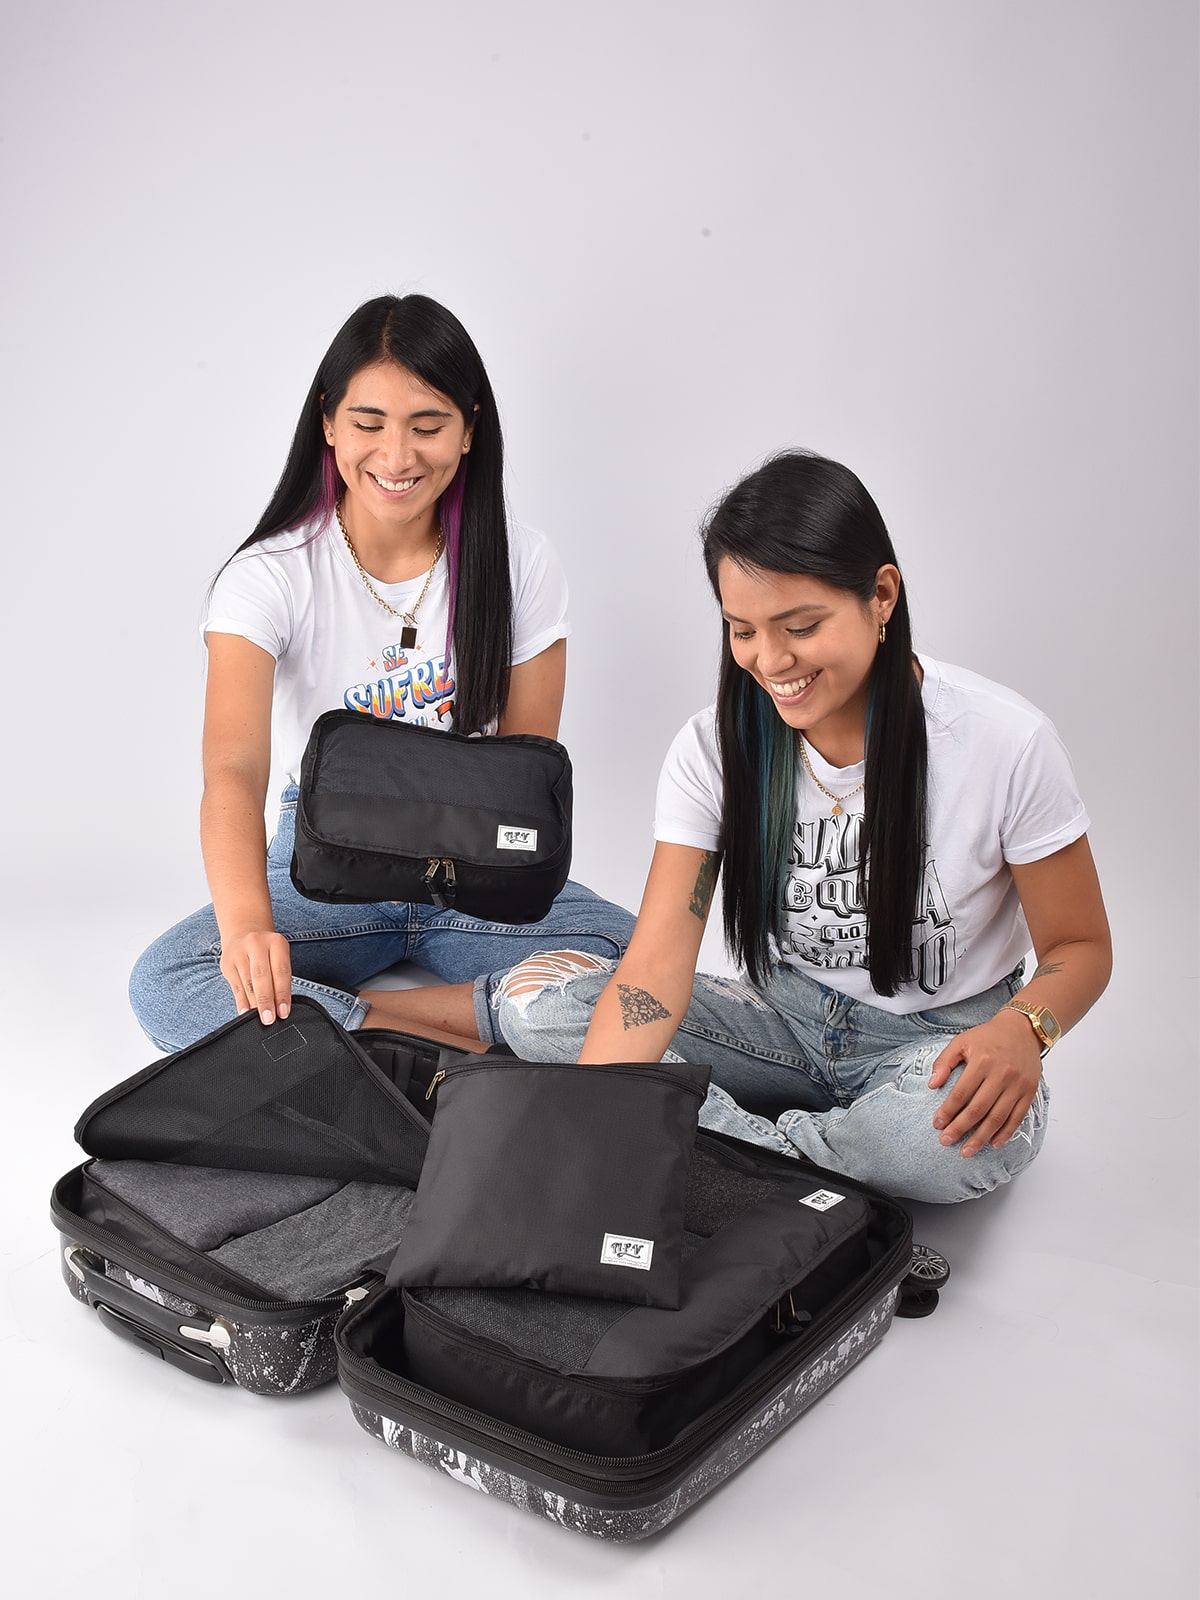 Marketland Online Paraguay - ¿Estás planeando tu proximo viaje?🧳 Tenemos  los organizadores de maleta para ayudarte a organizarlo! *Ideal para llevar  toda tu ropa y accesorios organizados. Gs. 120.000 Pedidos al 📲0981